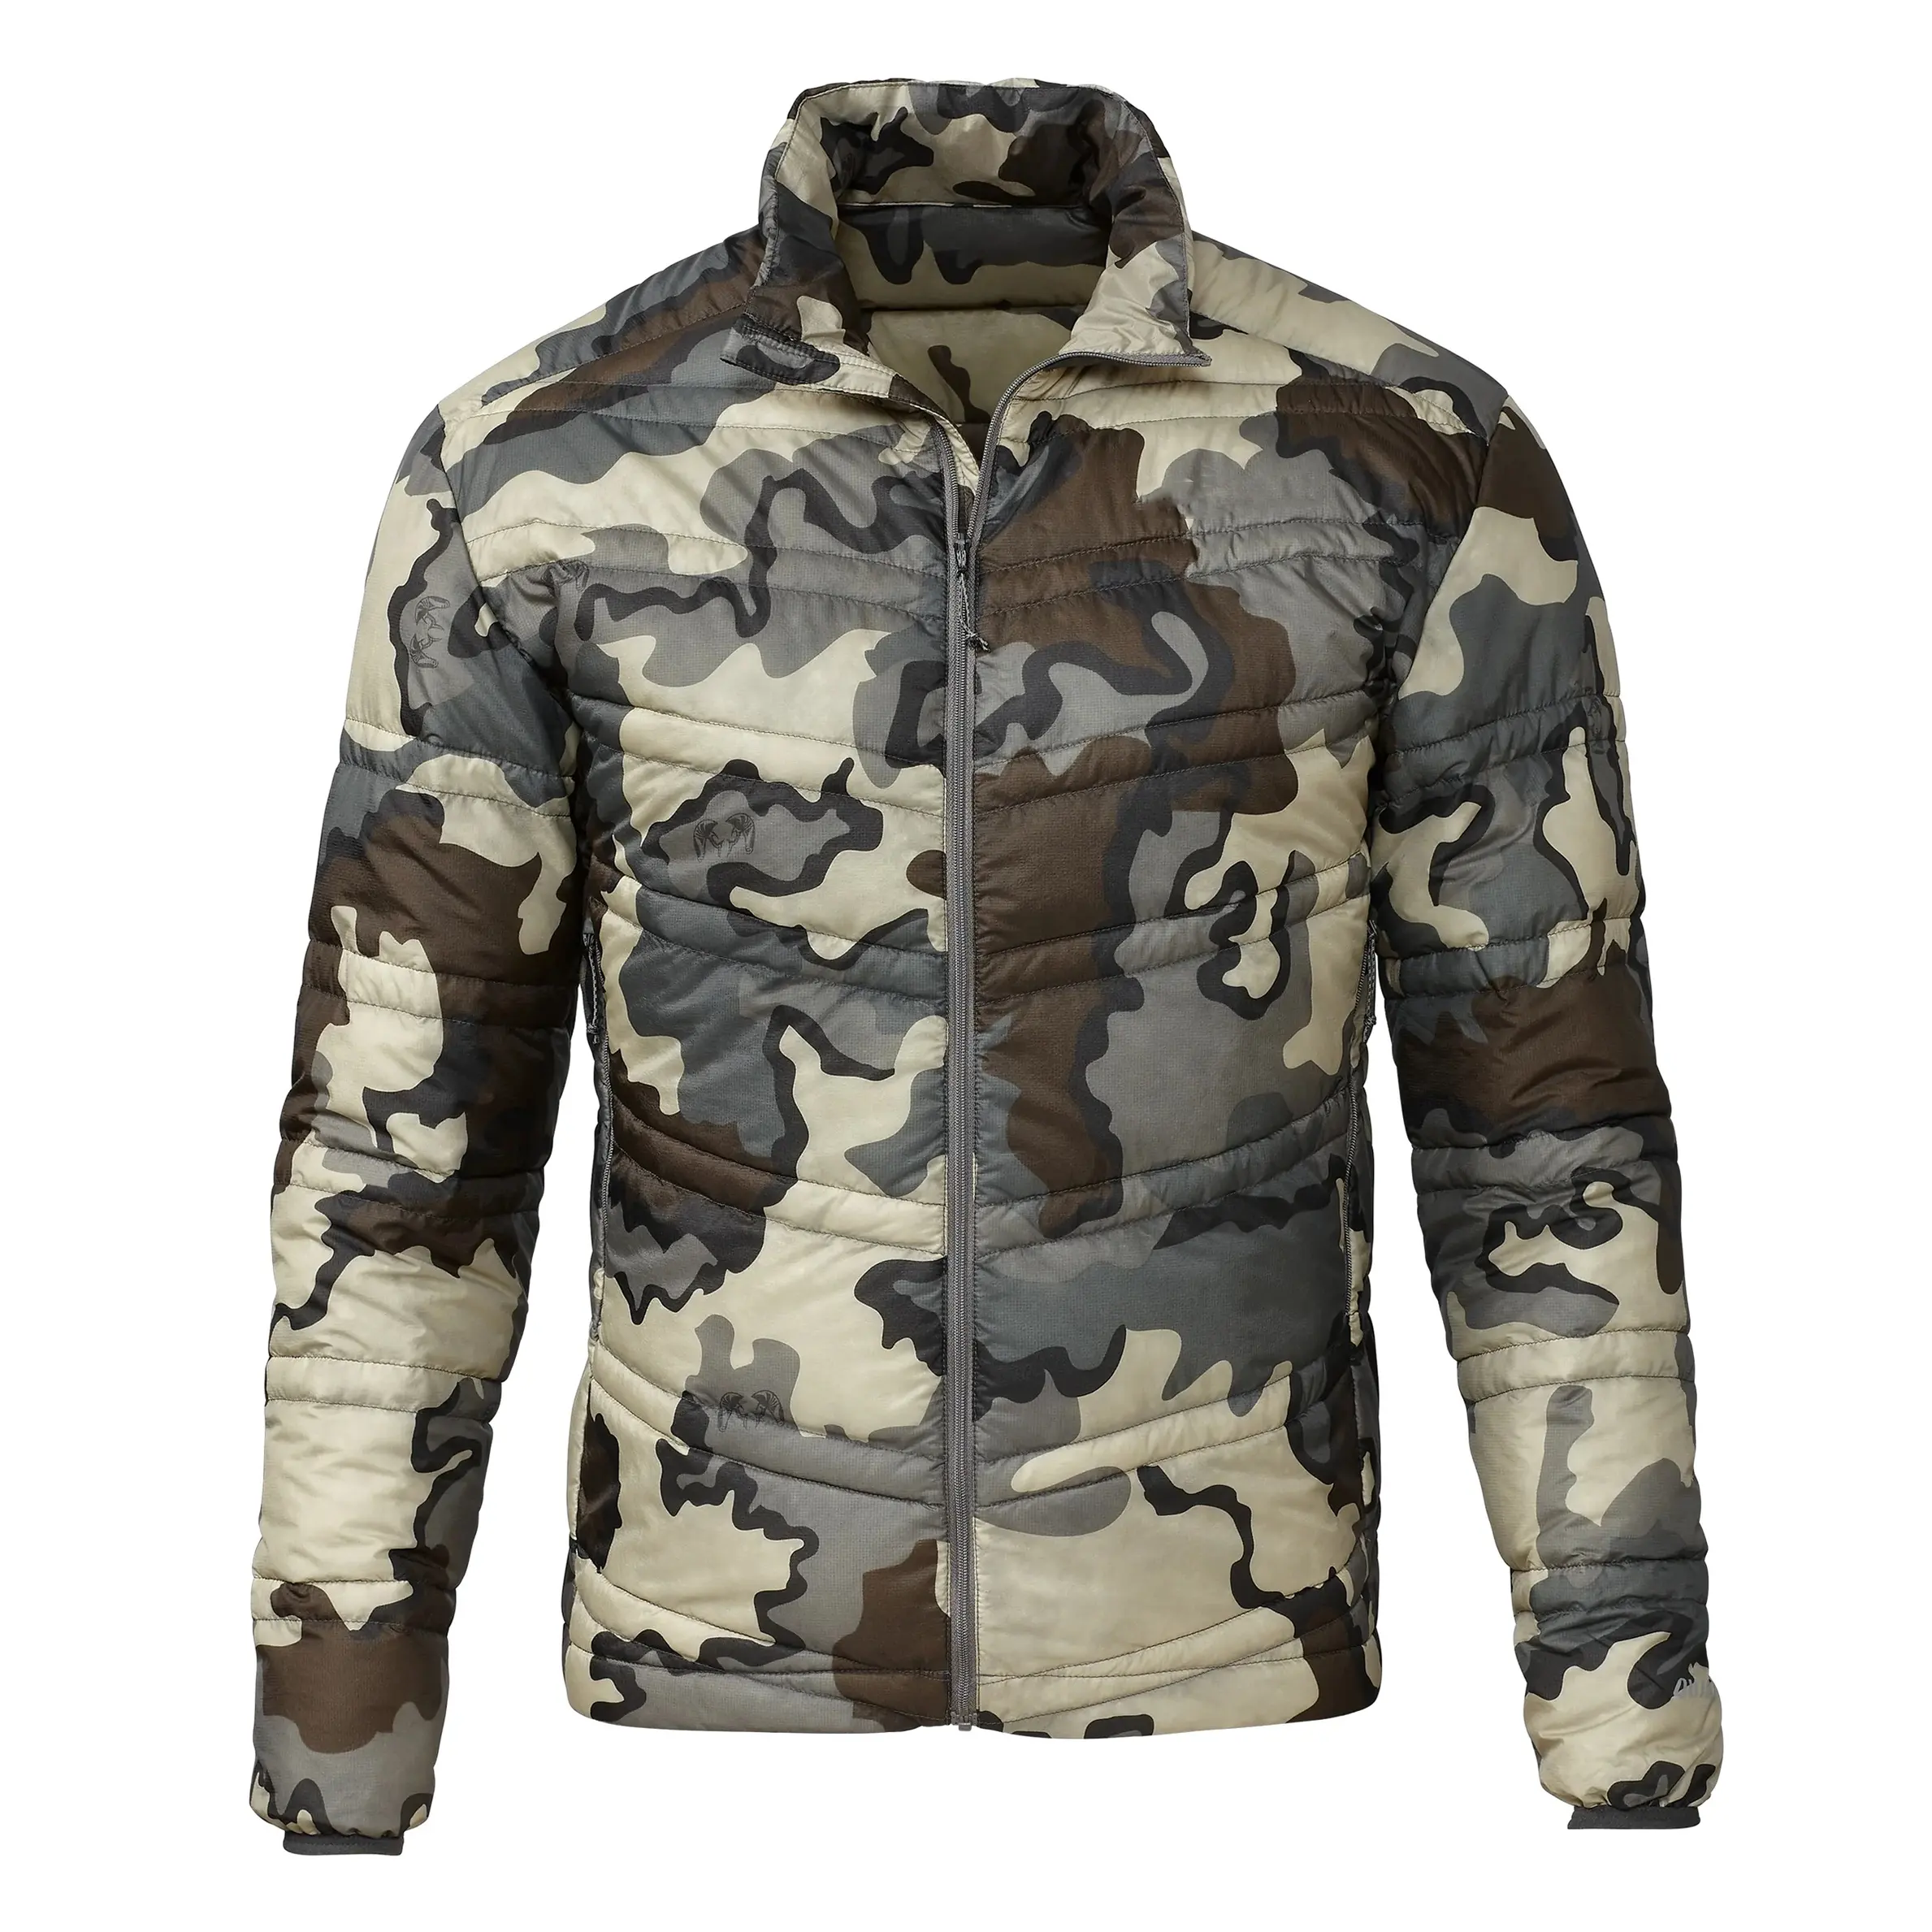 Son derece tavsiye edilen çok camo açık hayvan avcılık aşağı ceket özel nakış logosu ucuz fiyat erkek avcılık kabarık ceket